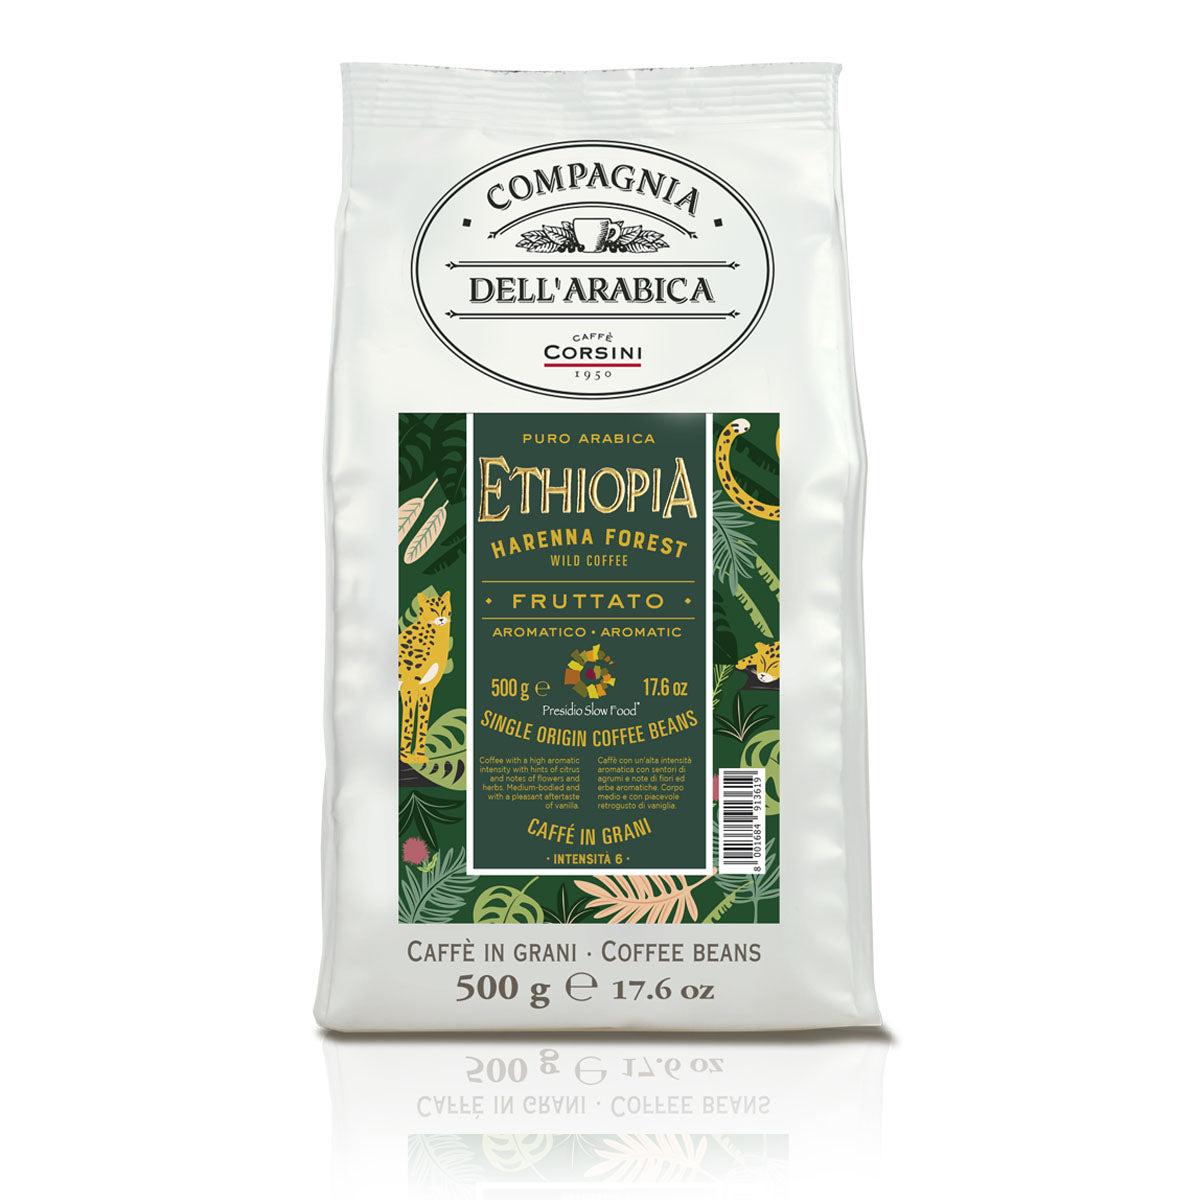 Caffè in grani | Ethiopia Natural Coffee | 100% Arabica | 500g | Cartone con 15 confezioni